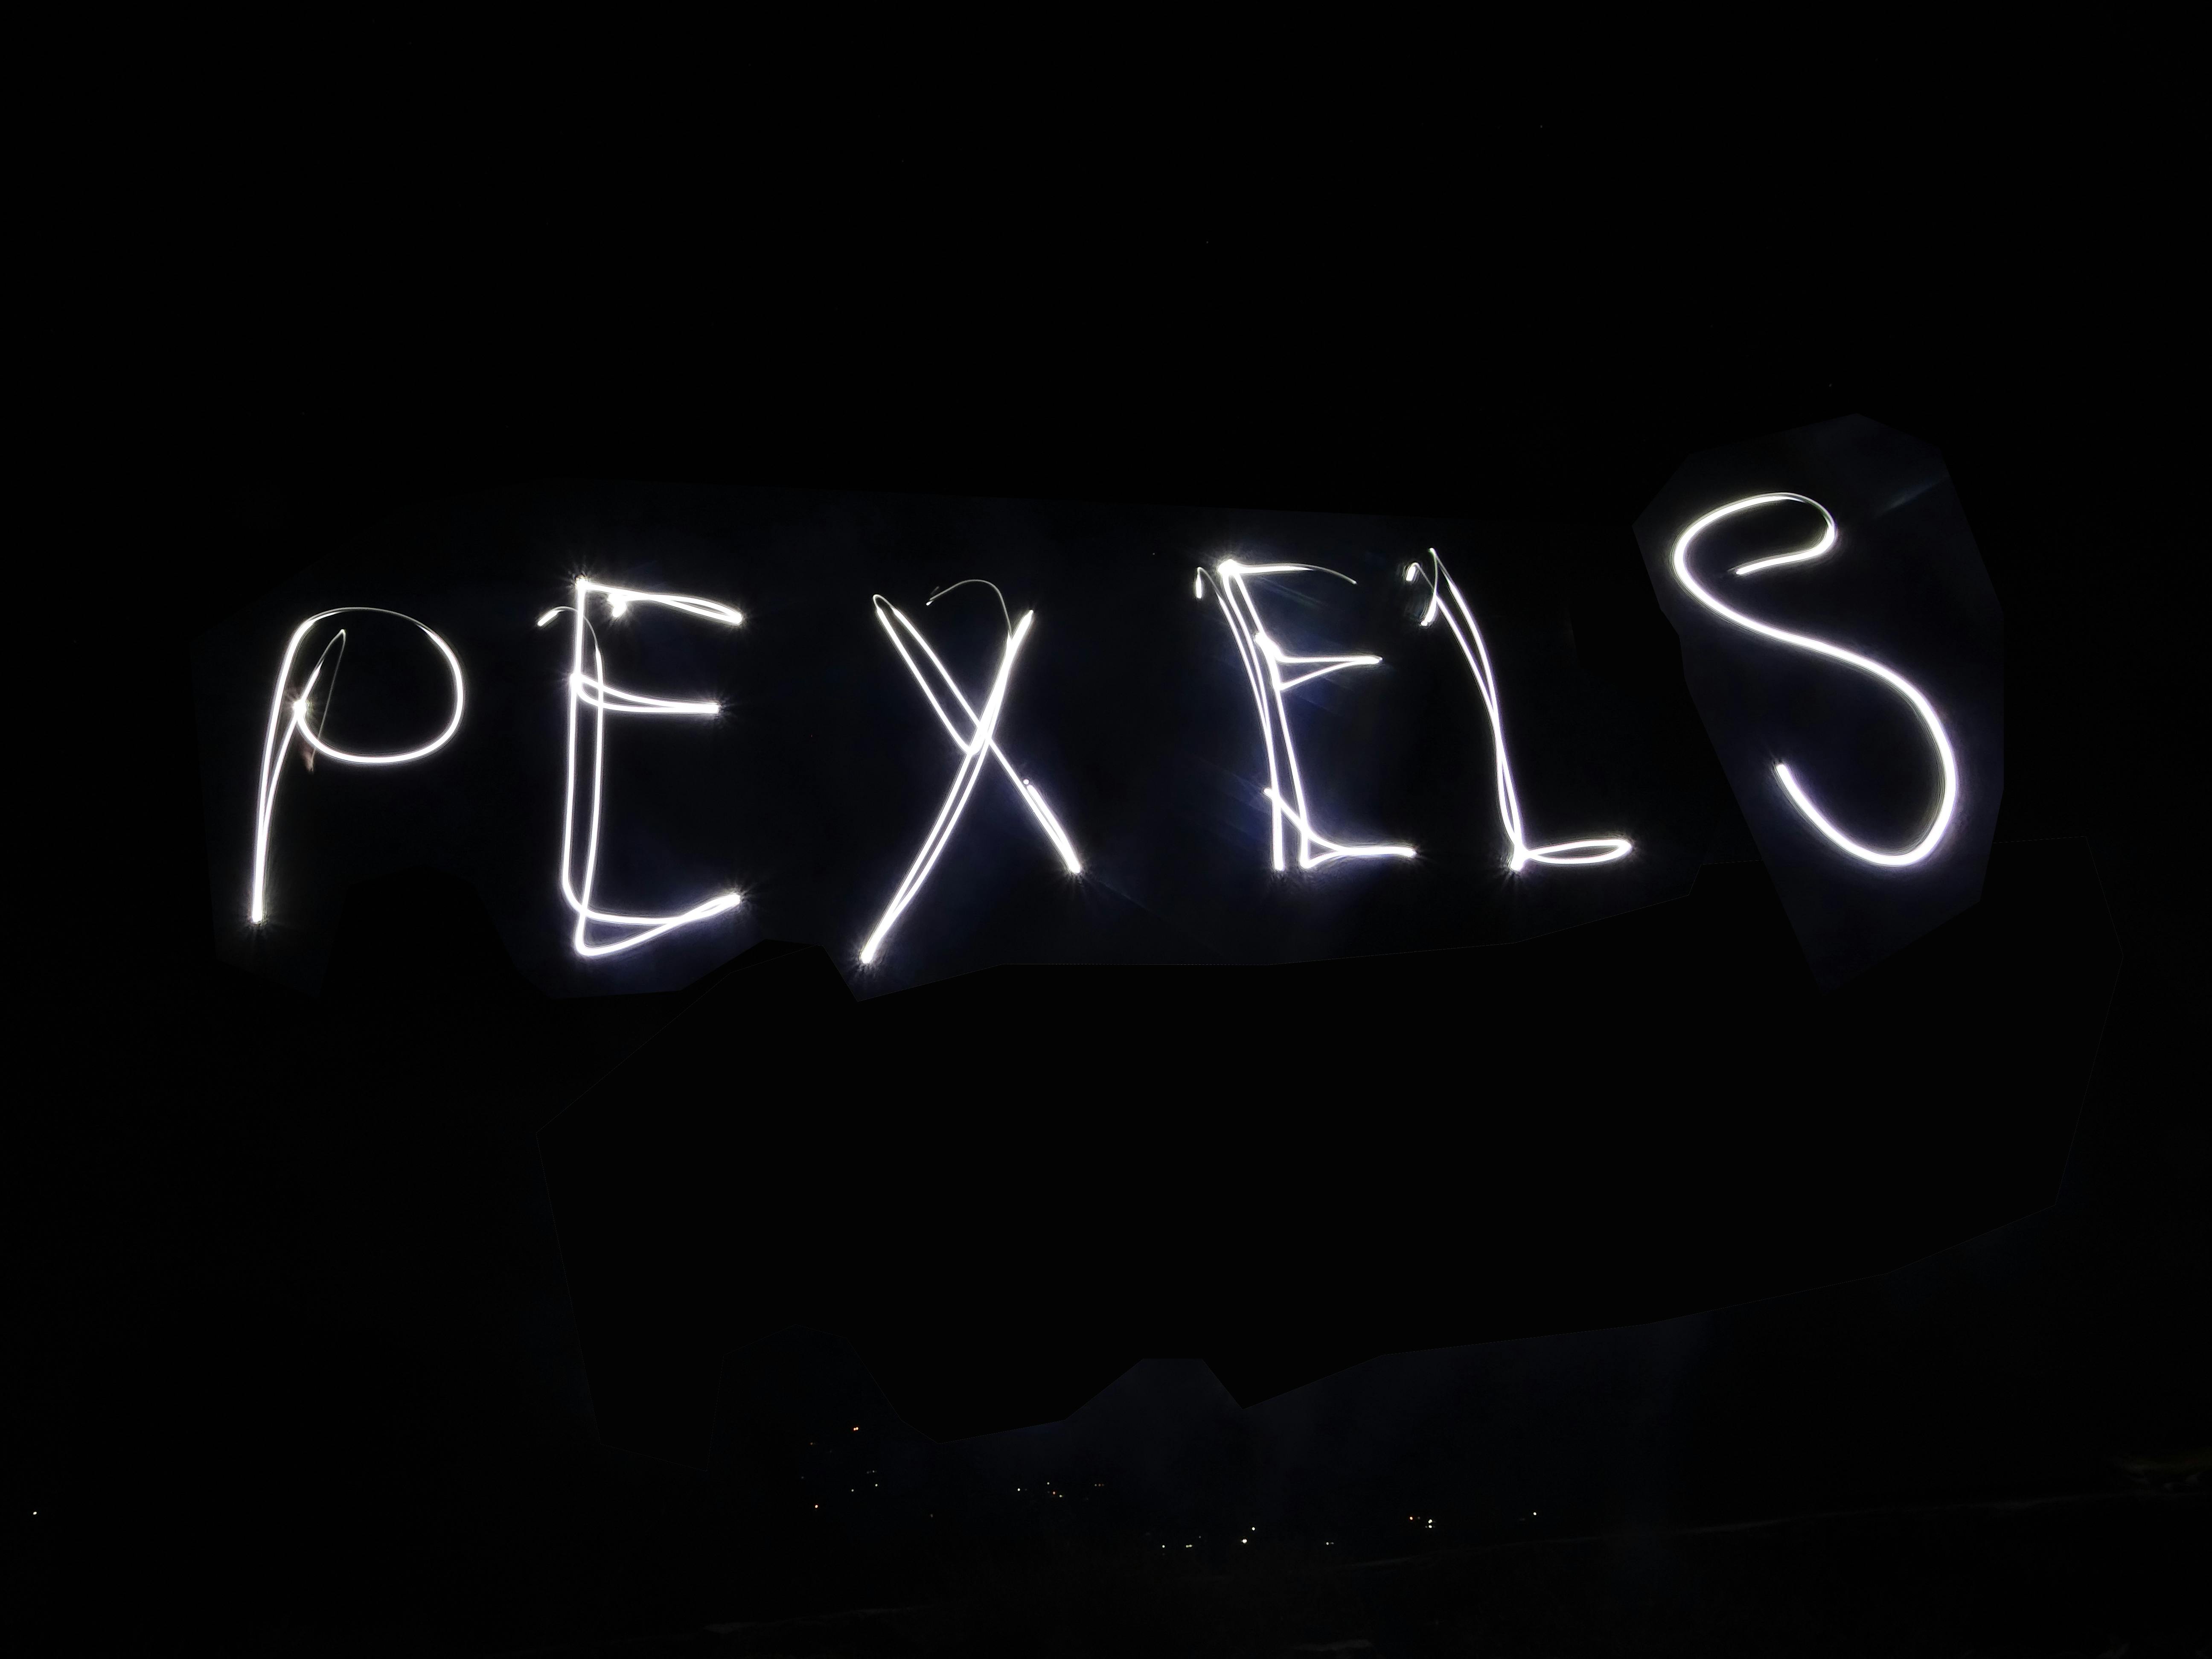 40 Beautiful Pexel Photos · Pexels · Free Stock Photos